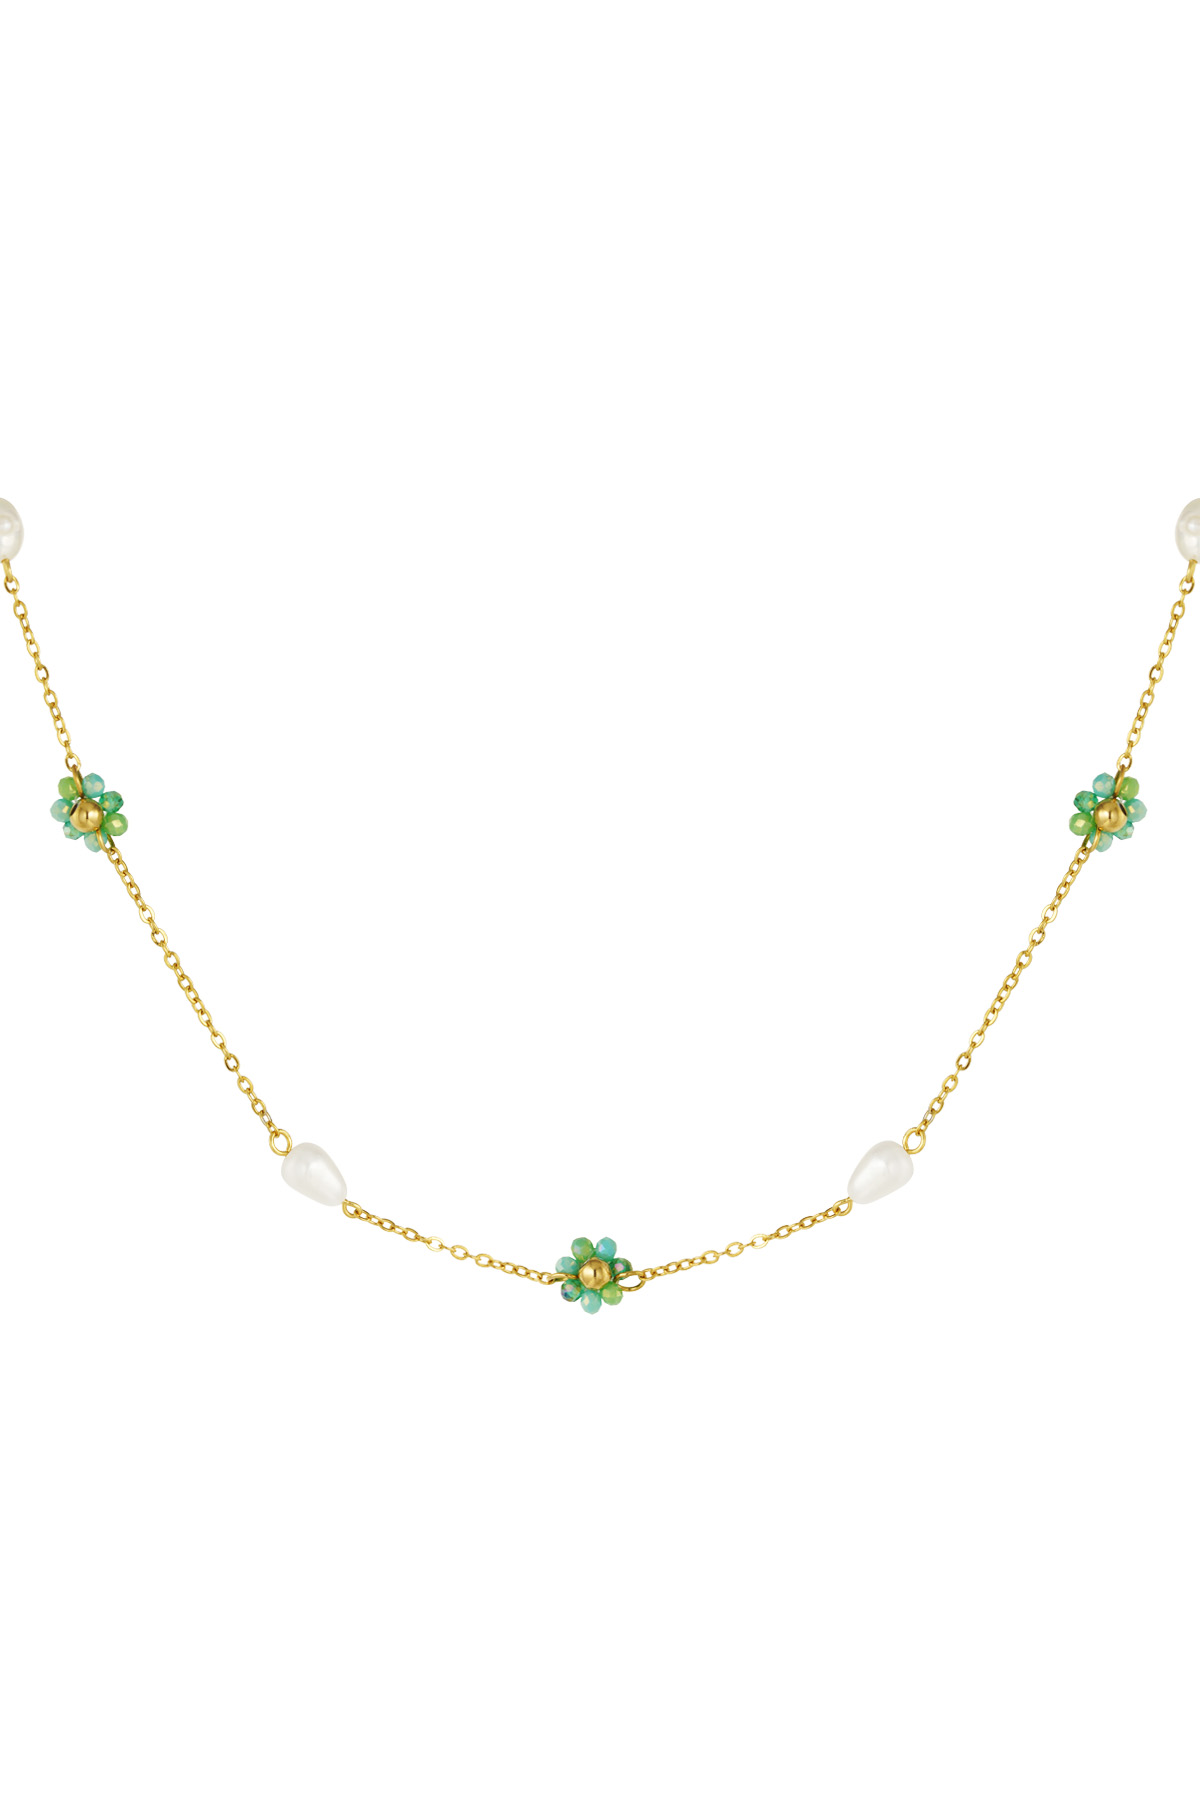 Halskette mit Blumen- und Perlenanhängern – grün/gold 